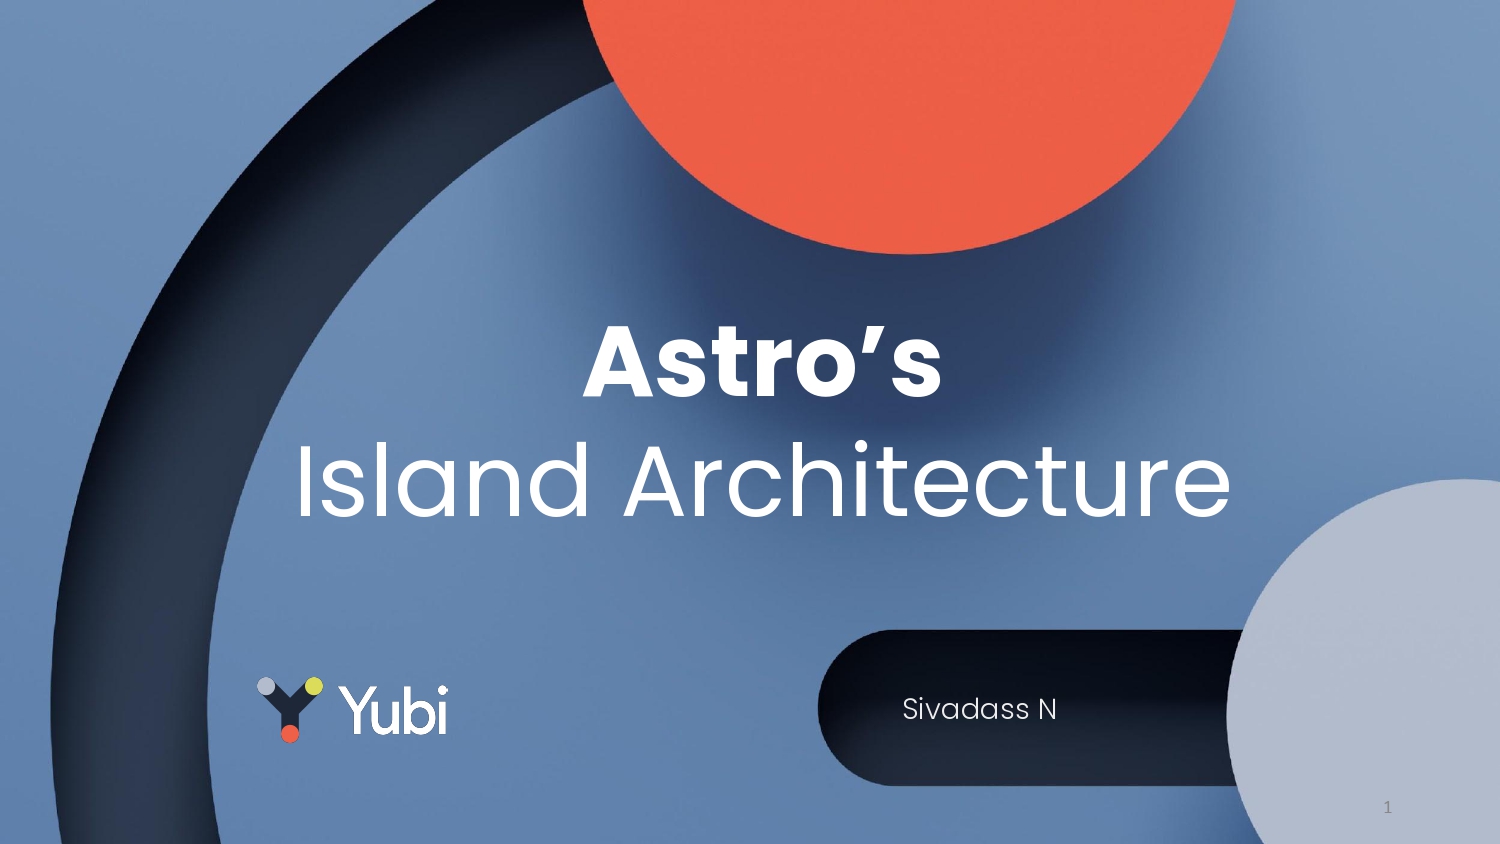 Astro Island Architecture